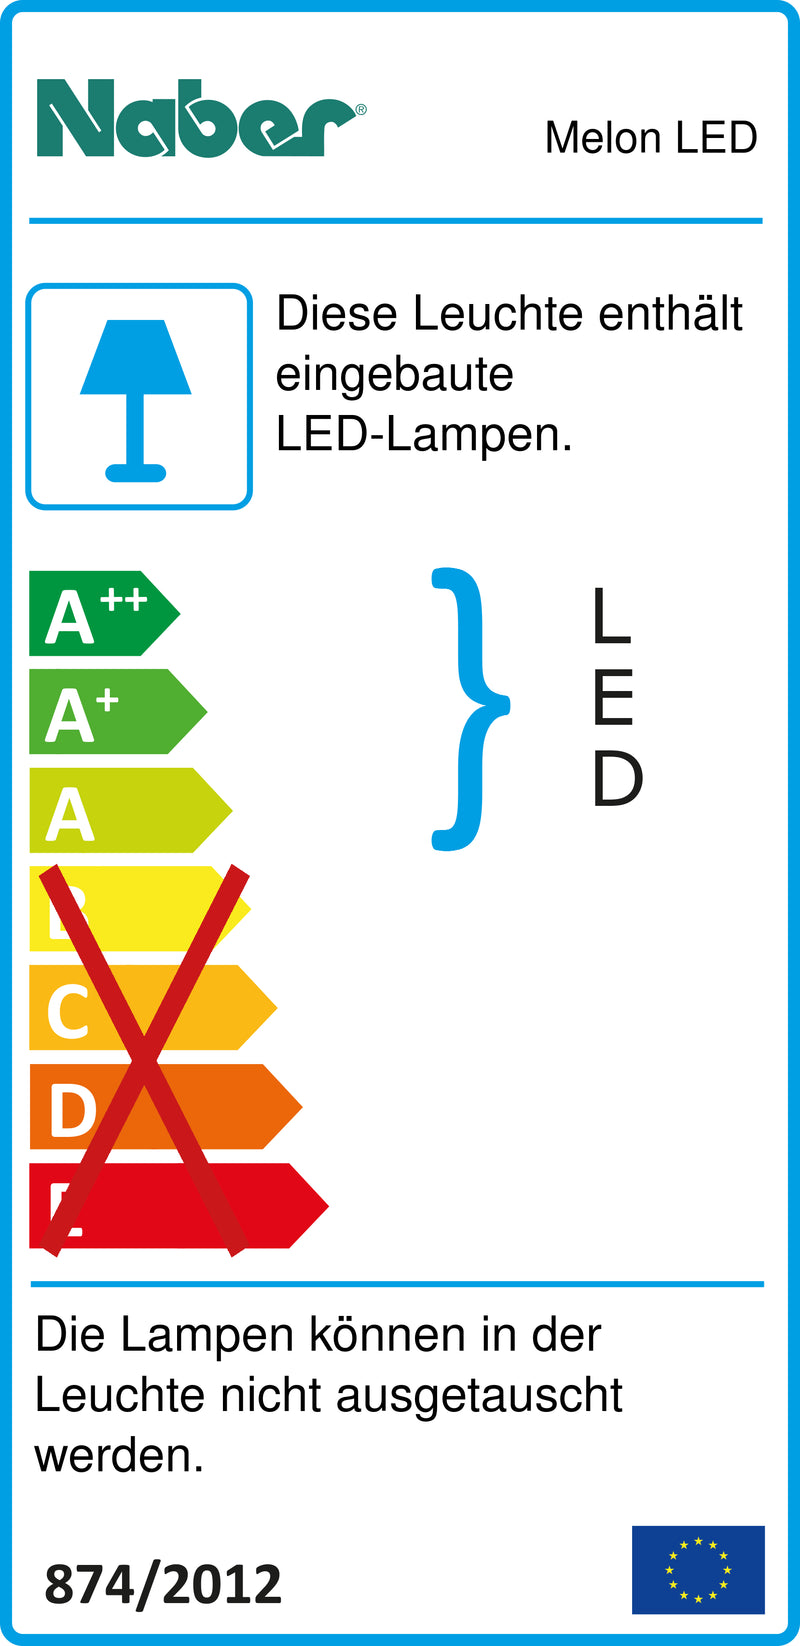 E-Label zu Zeichnung zu Melon LED als Variante 5 LED Strahler, L 666 mm, 7,5 W, edelstahlfarbig von Naber GmbH in der Kategorie Lichttechnik in Österreich auf conceptshop.at